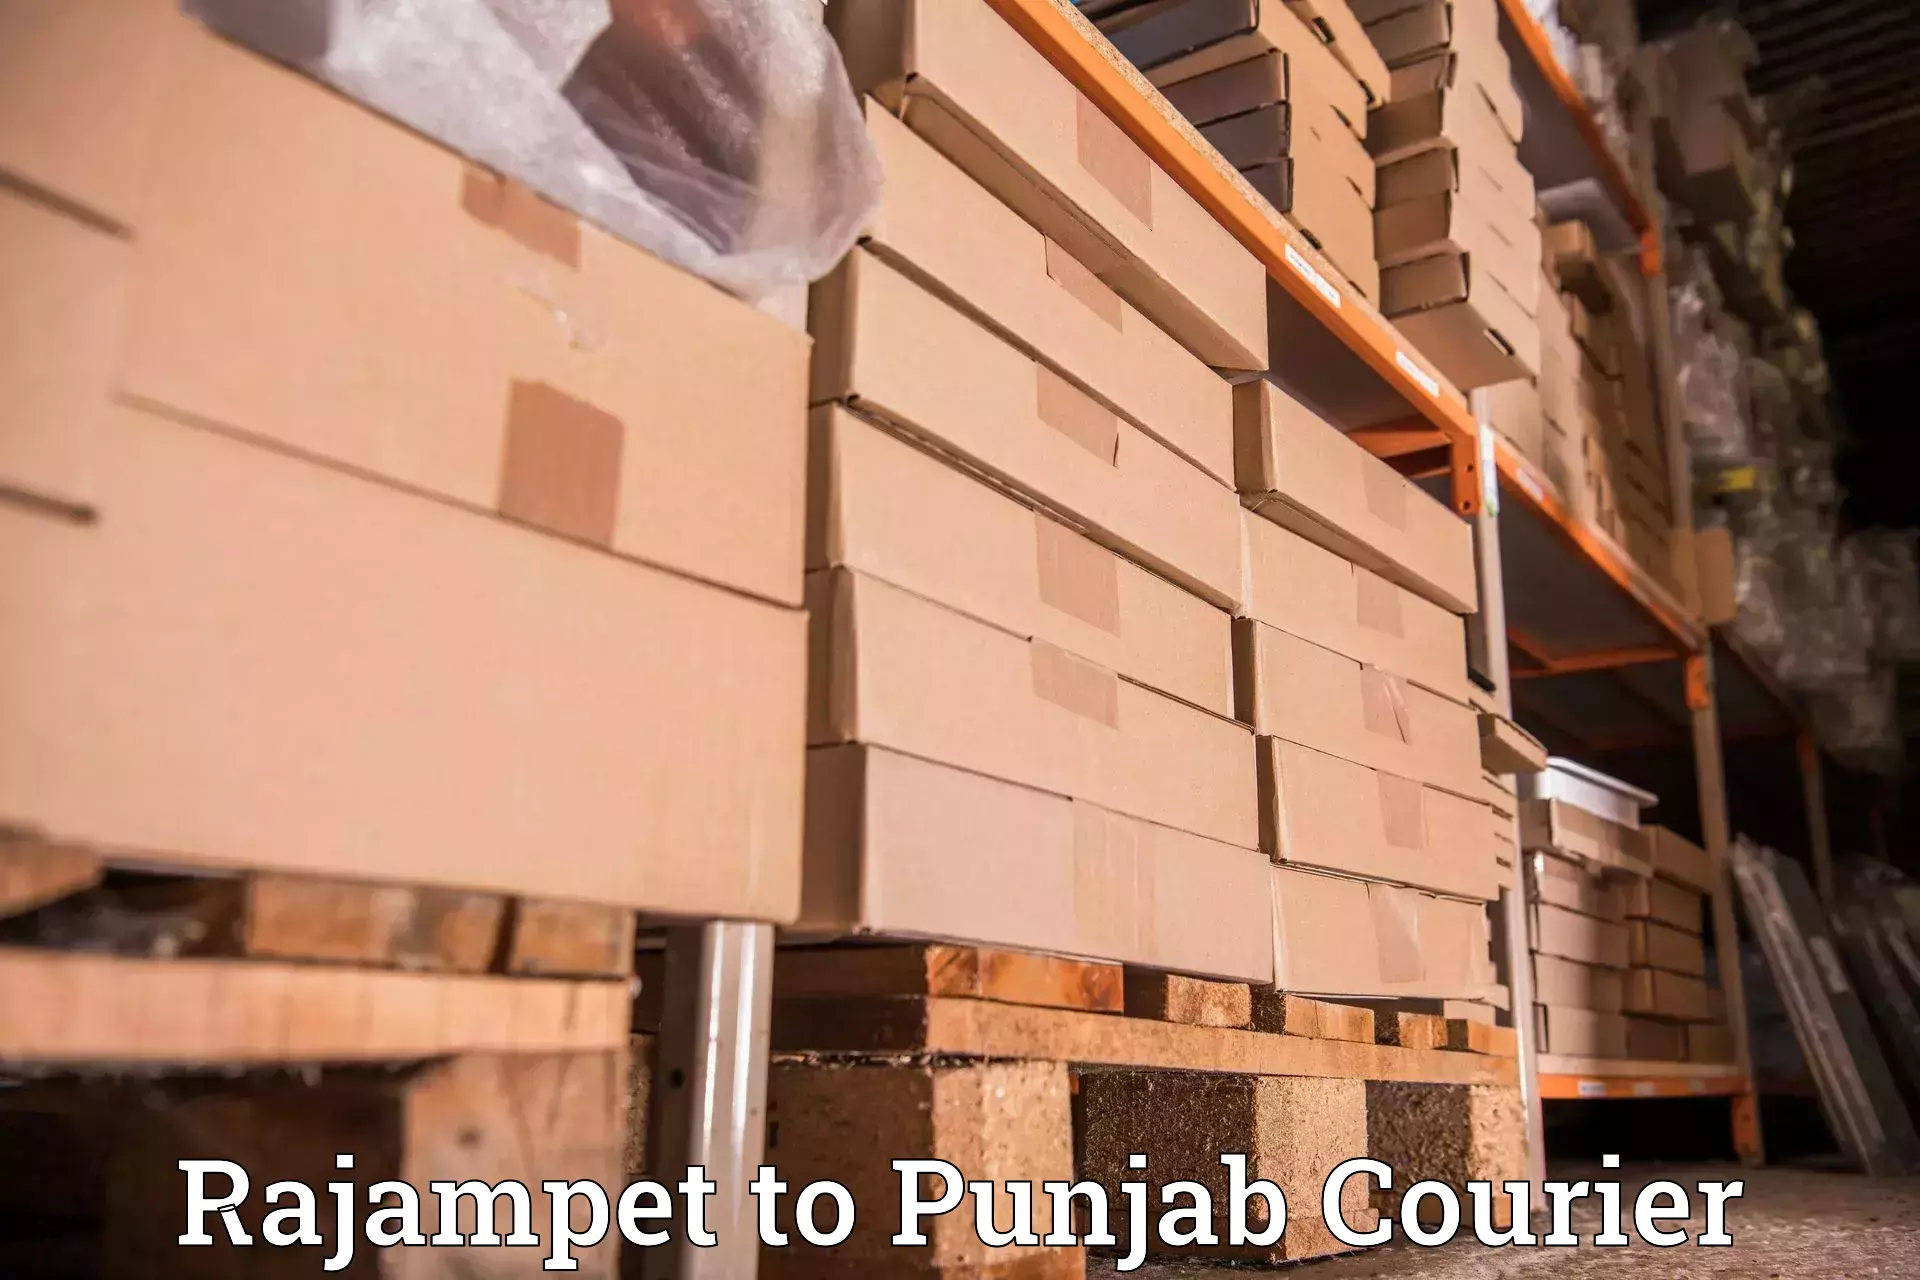 Business shipping needs Rajampet to Adampur Jalandhar